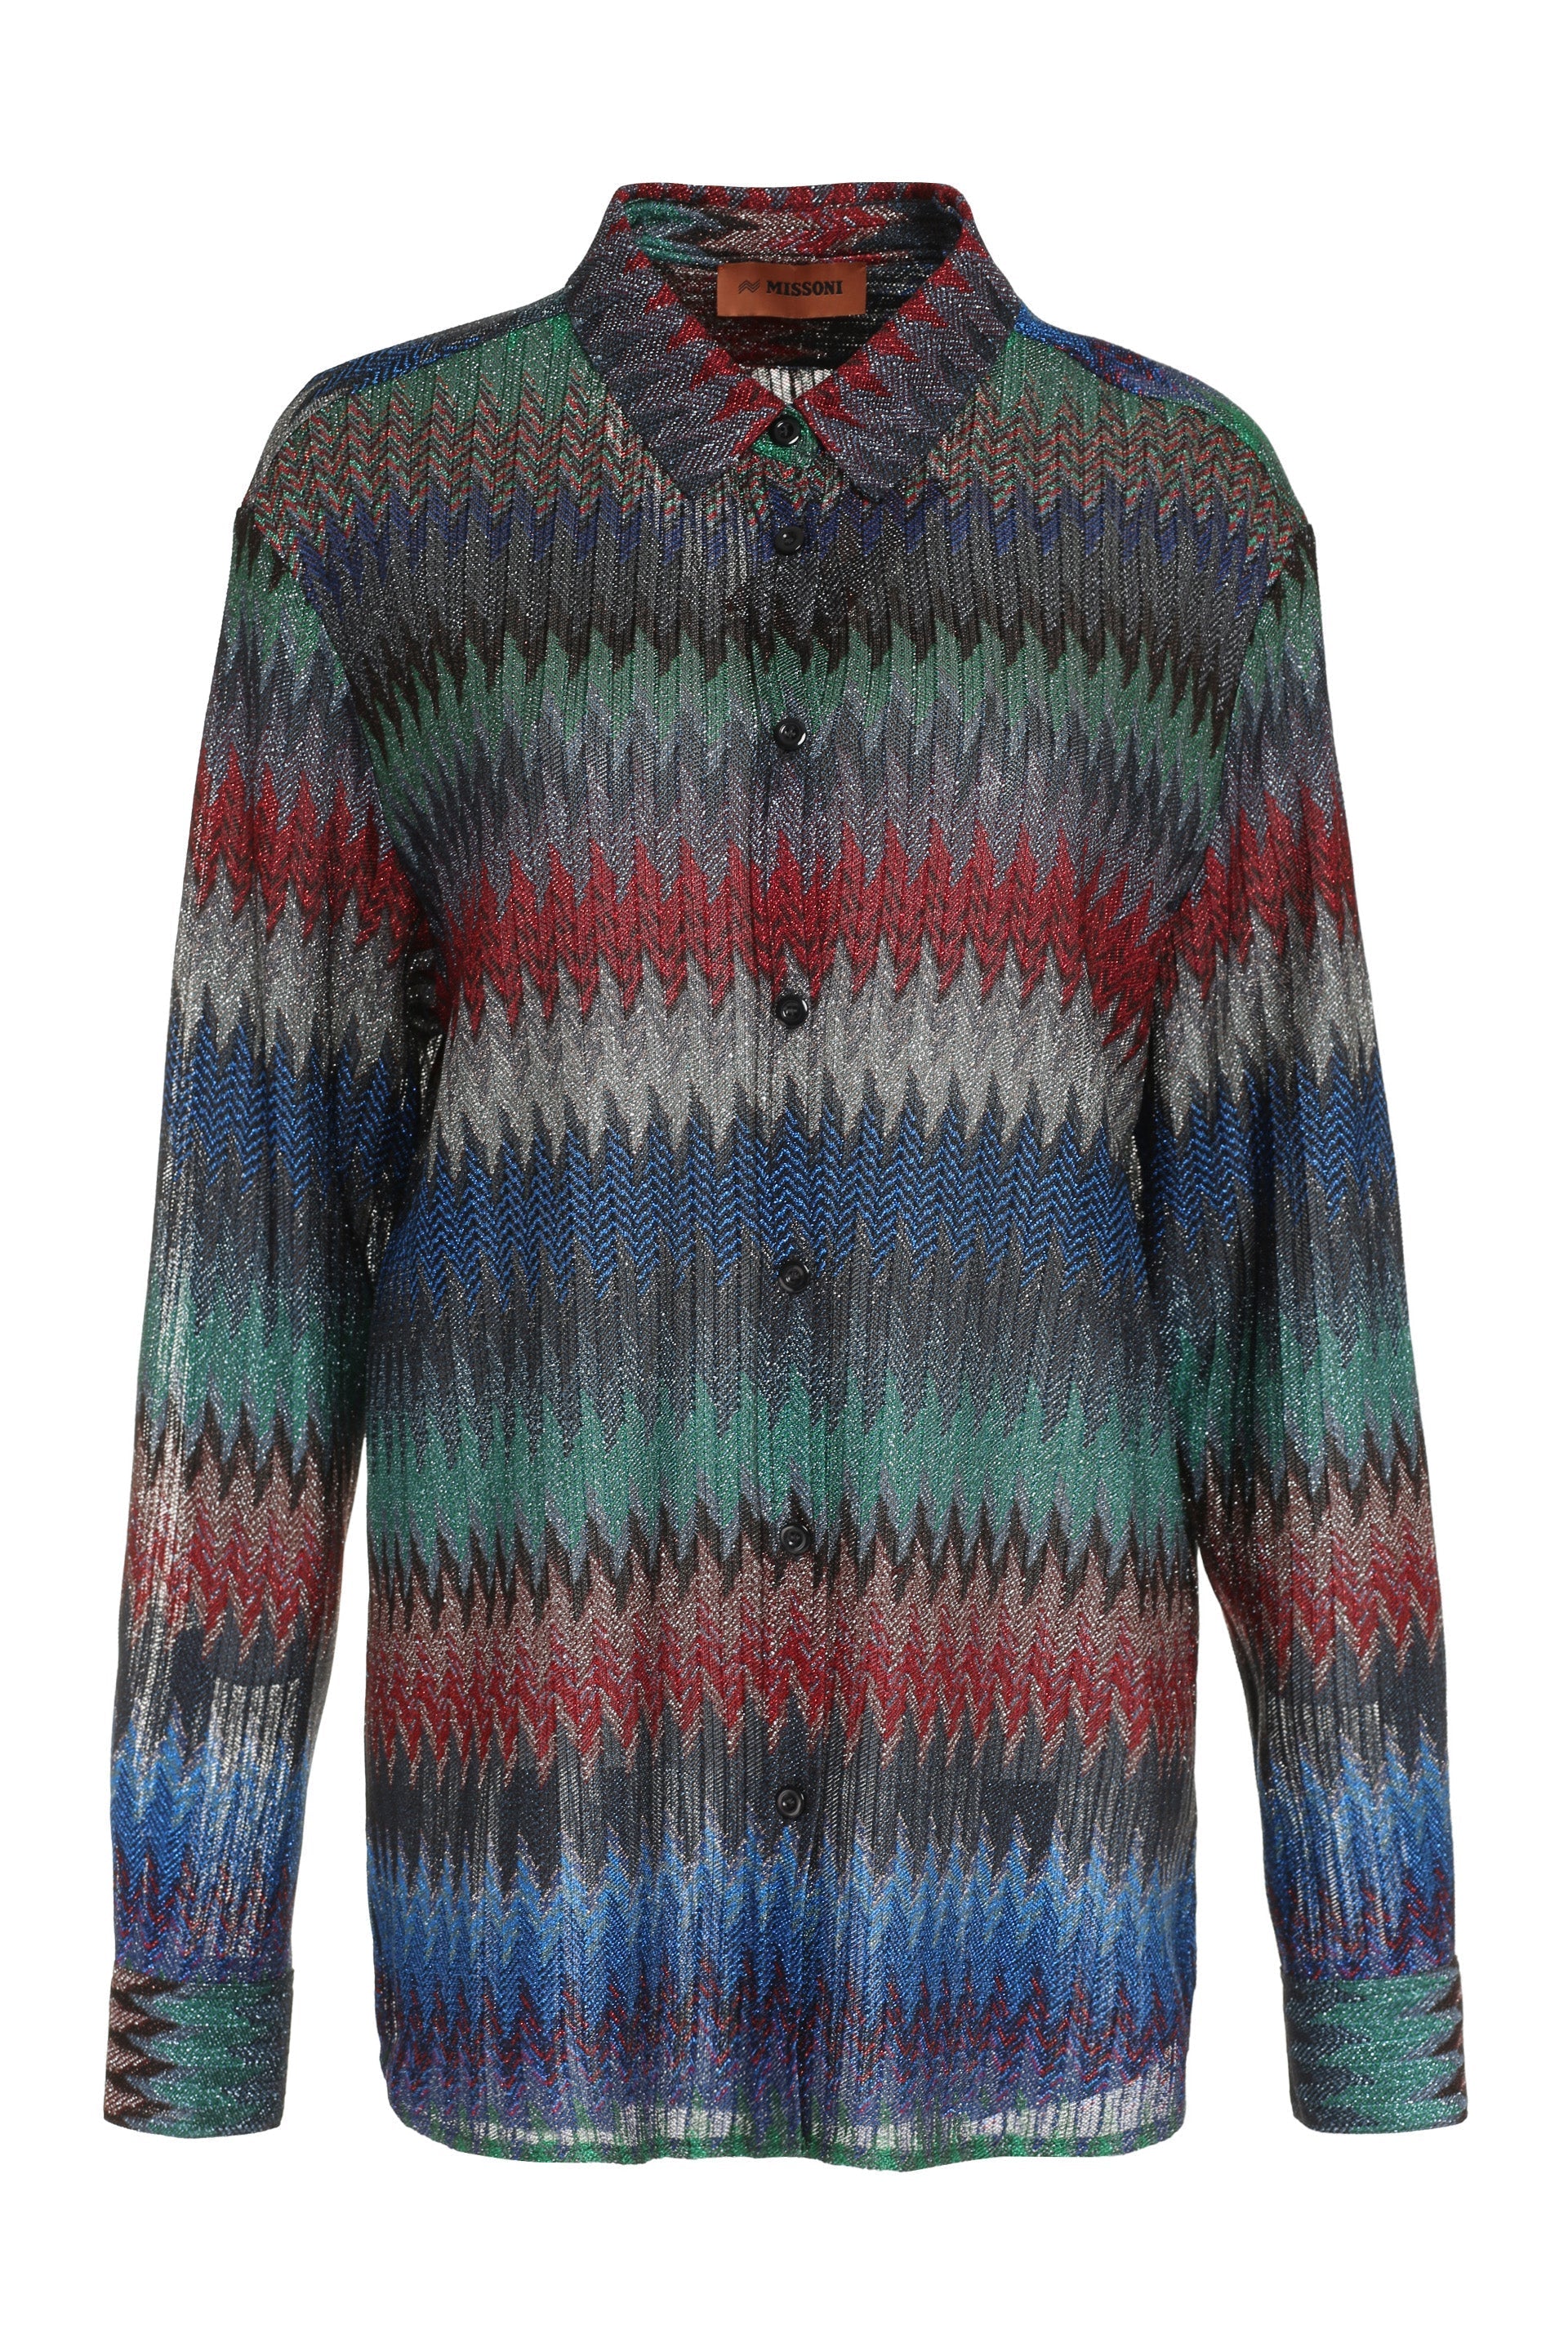 Chevron knit shirt-Missoni-OUTLET-SALE-40-ARCHIVIST